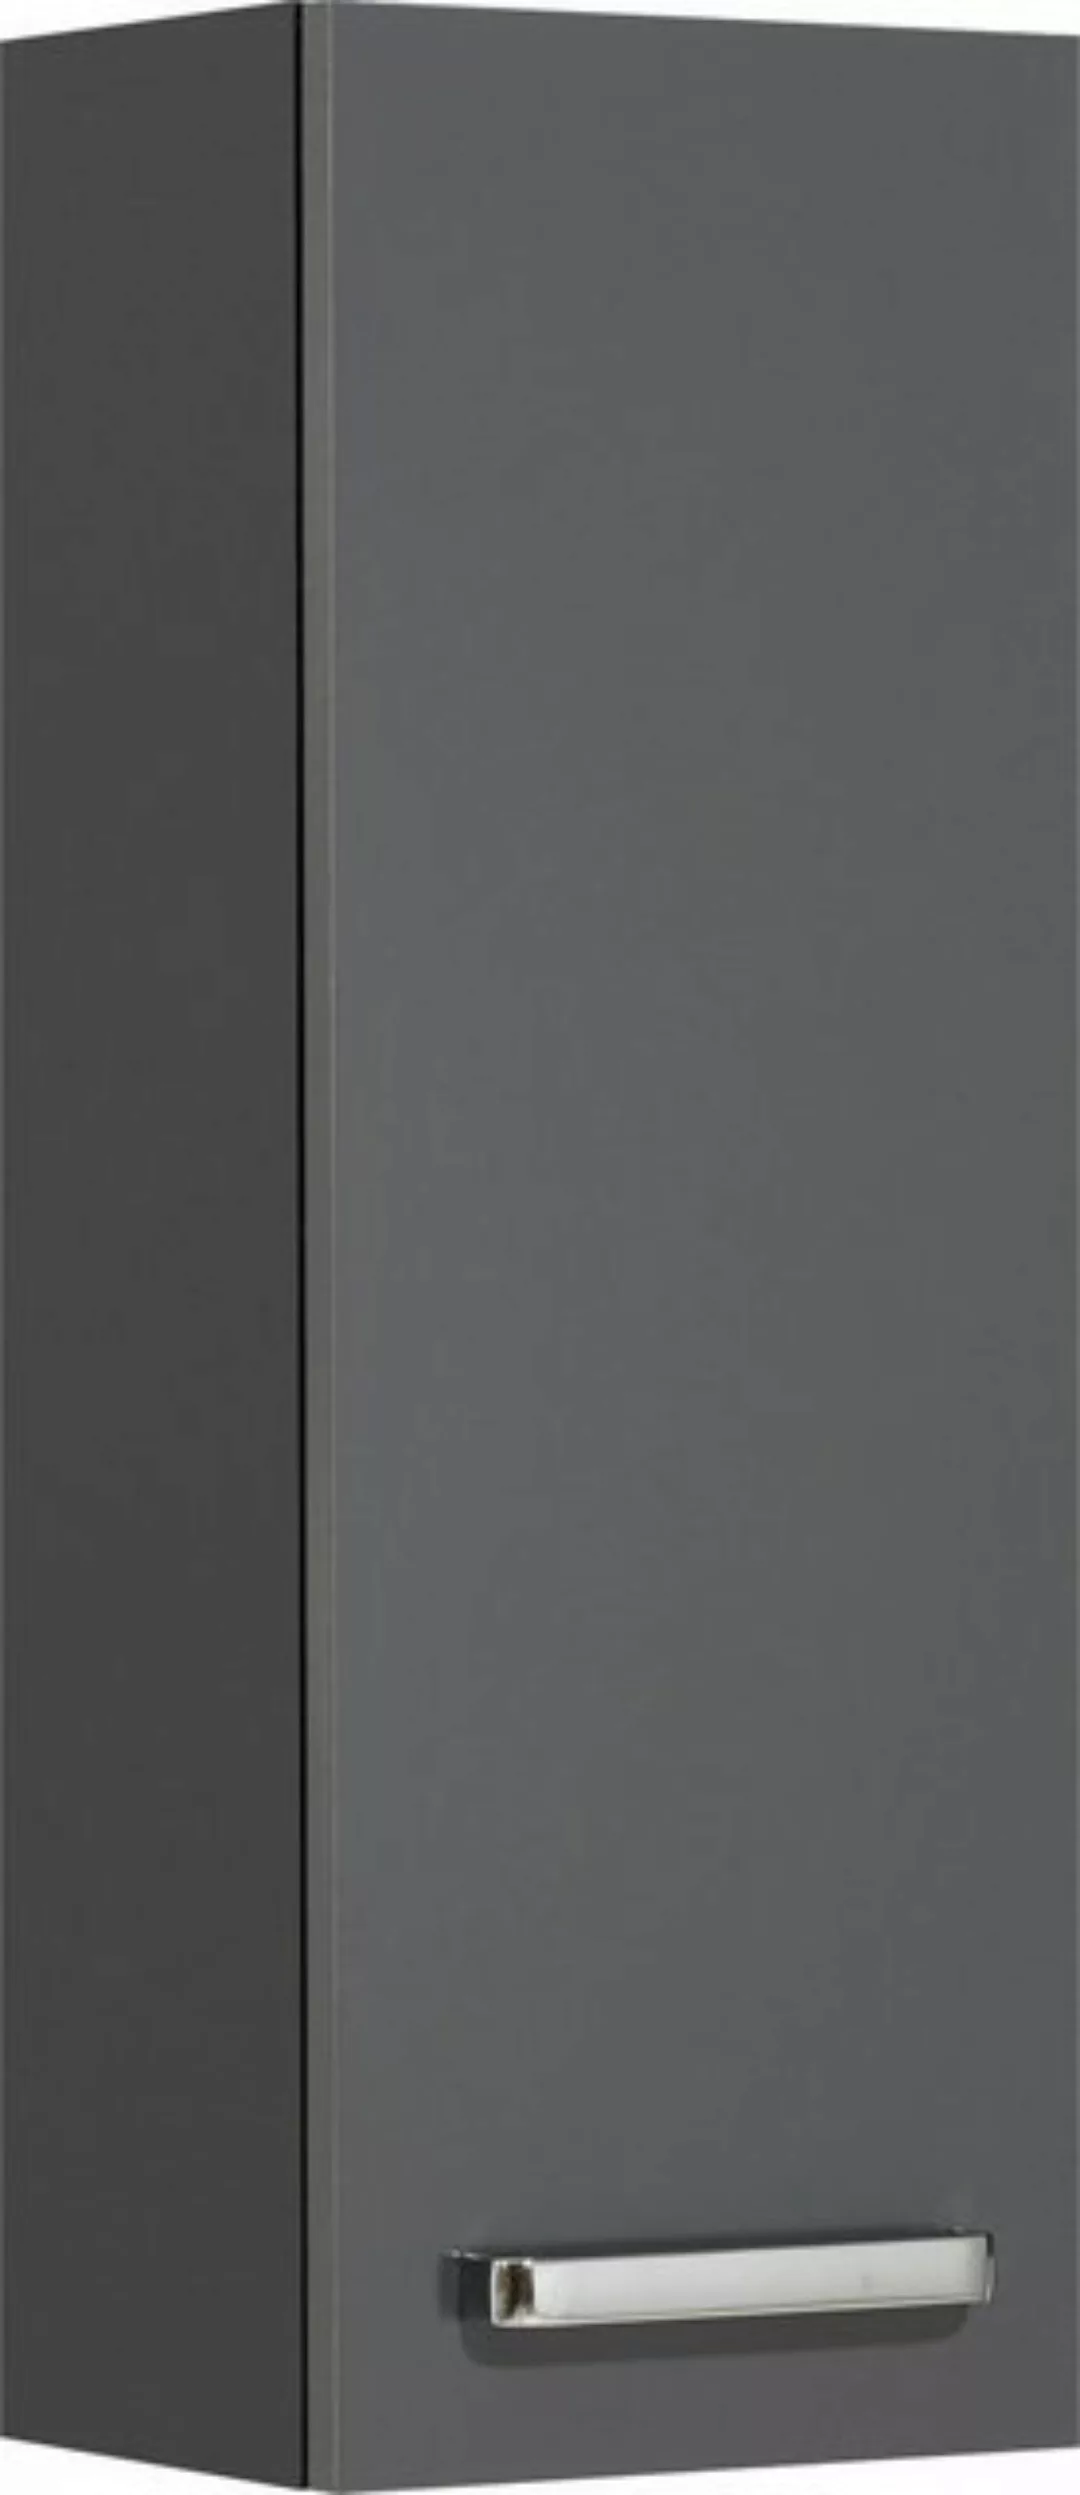 Saphir Hängeschrank Quickset Wand-Badschrank 25 cm breit mit 1 Tür und 2 Ei günstig online kaufen